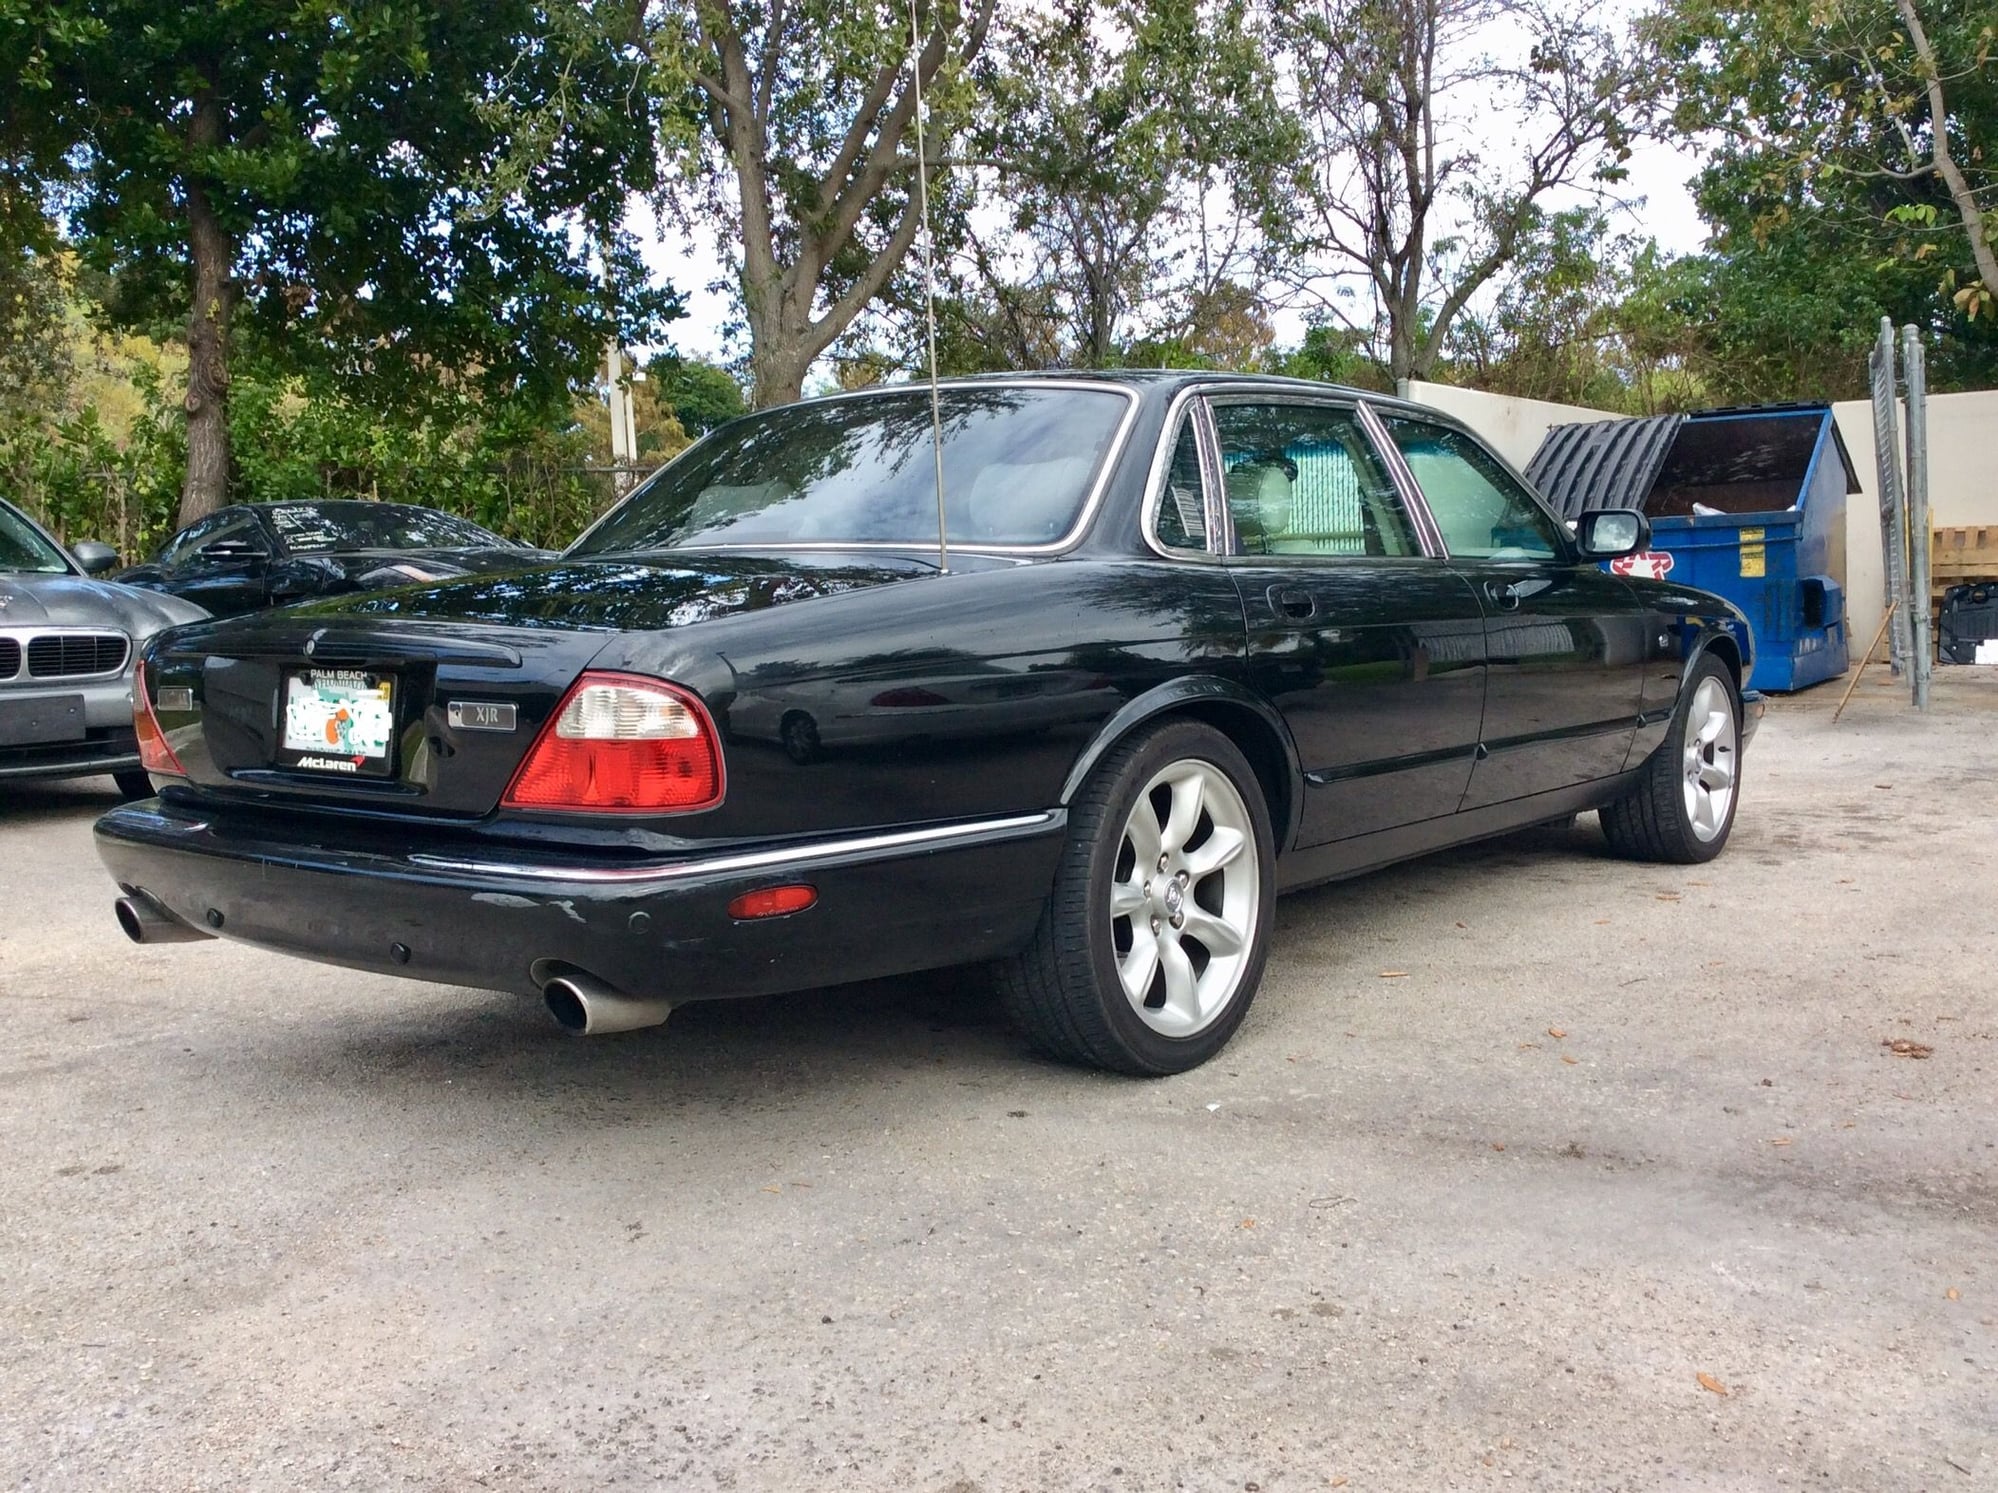 2001 Jaguar XJR - 2001 XJR - Used - VIN sajda15b71mf26722 - 110,000 Miles - 8 cyl - 2WD - Automatic - Sedan - Black - West Palm Beach, FL 33467, United States